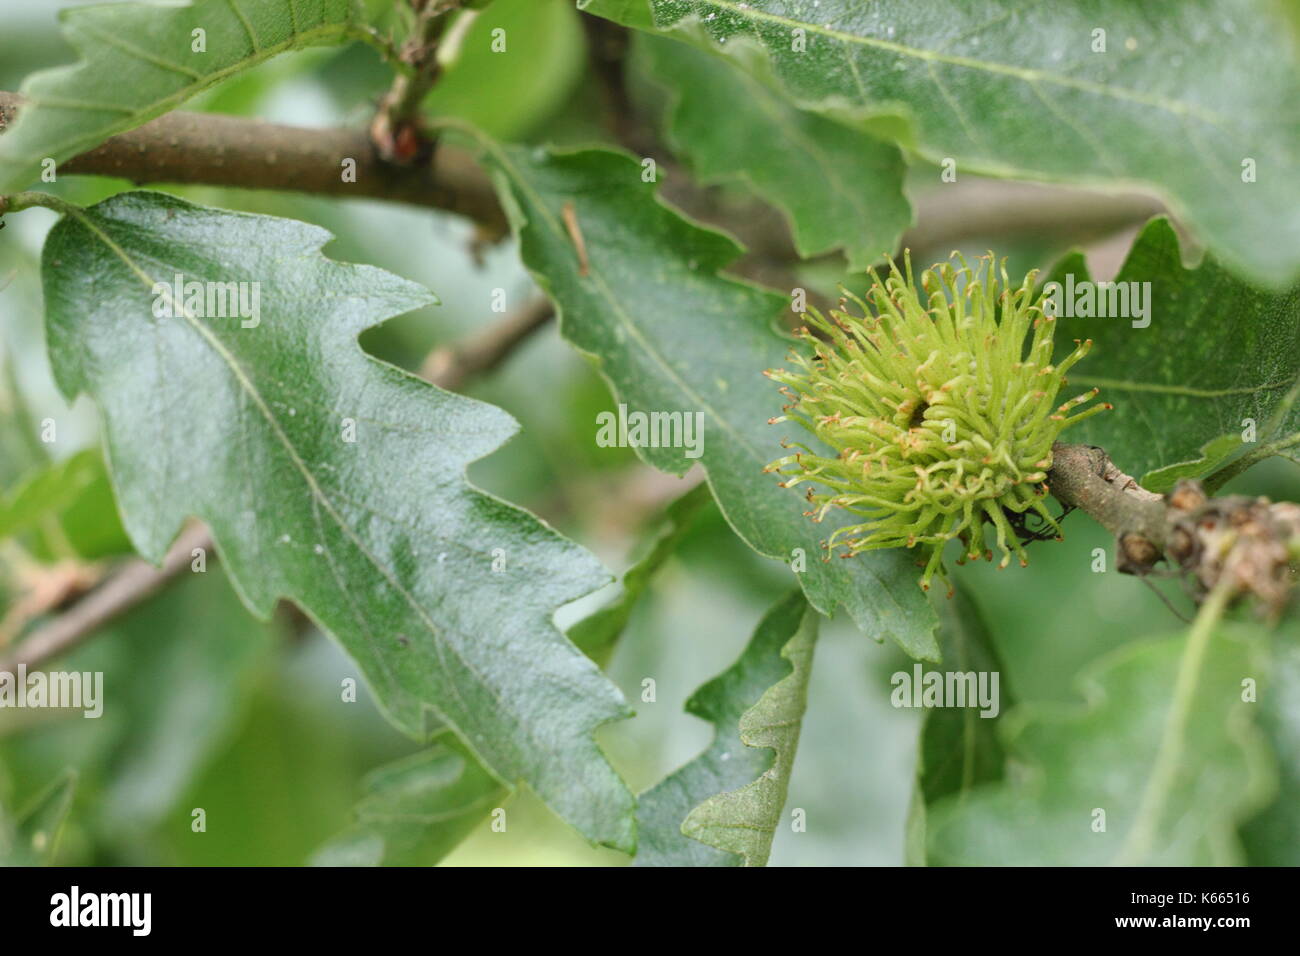 La Turchia quercia (Quercus cerris), visualizzazione di fogliame e frutta in via di sviluppo in estate (luglio), Regno Unito Foto Stock